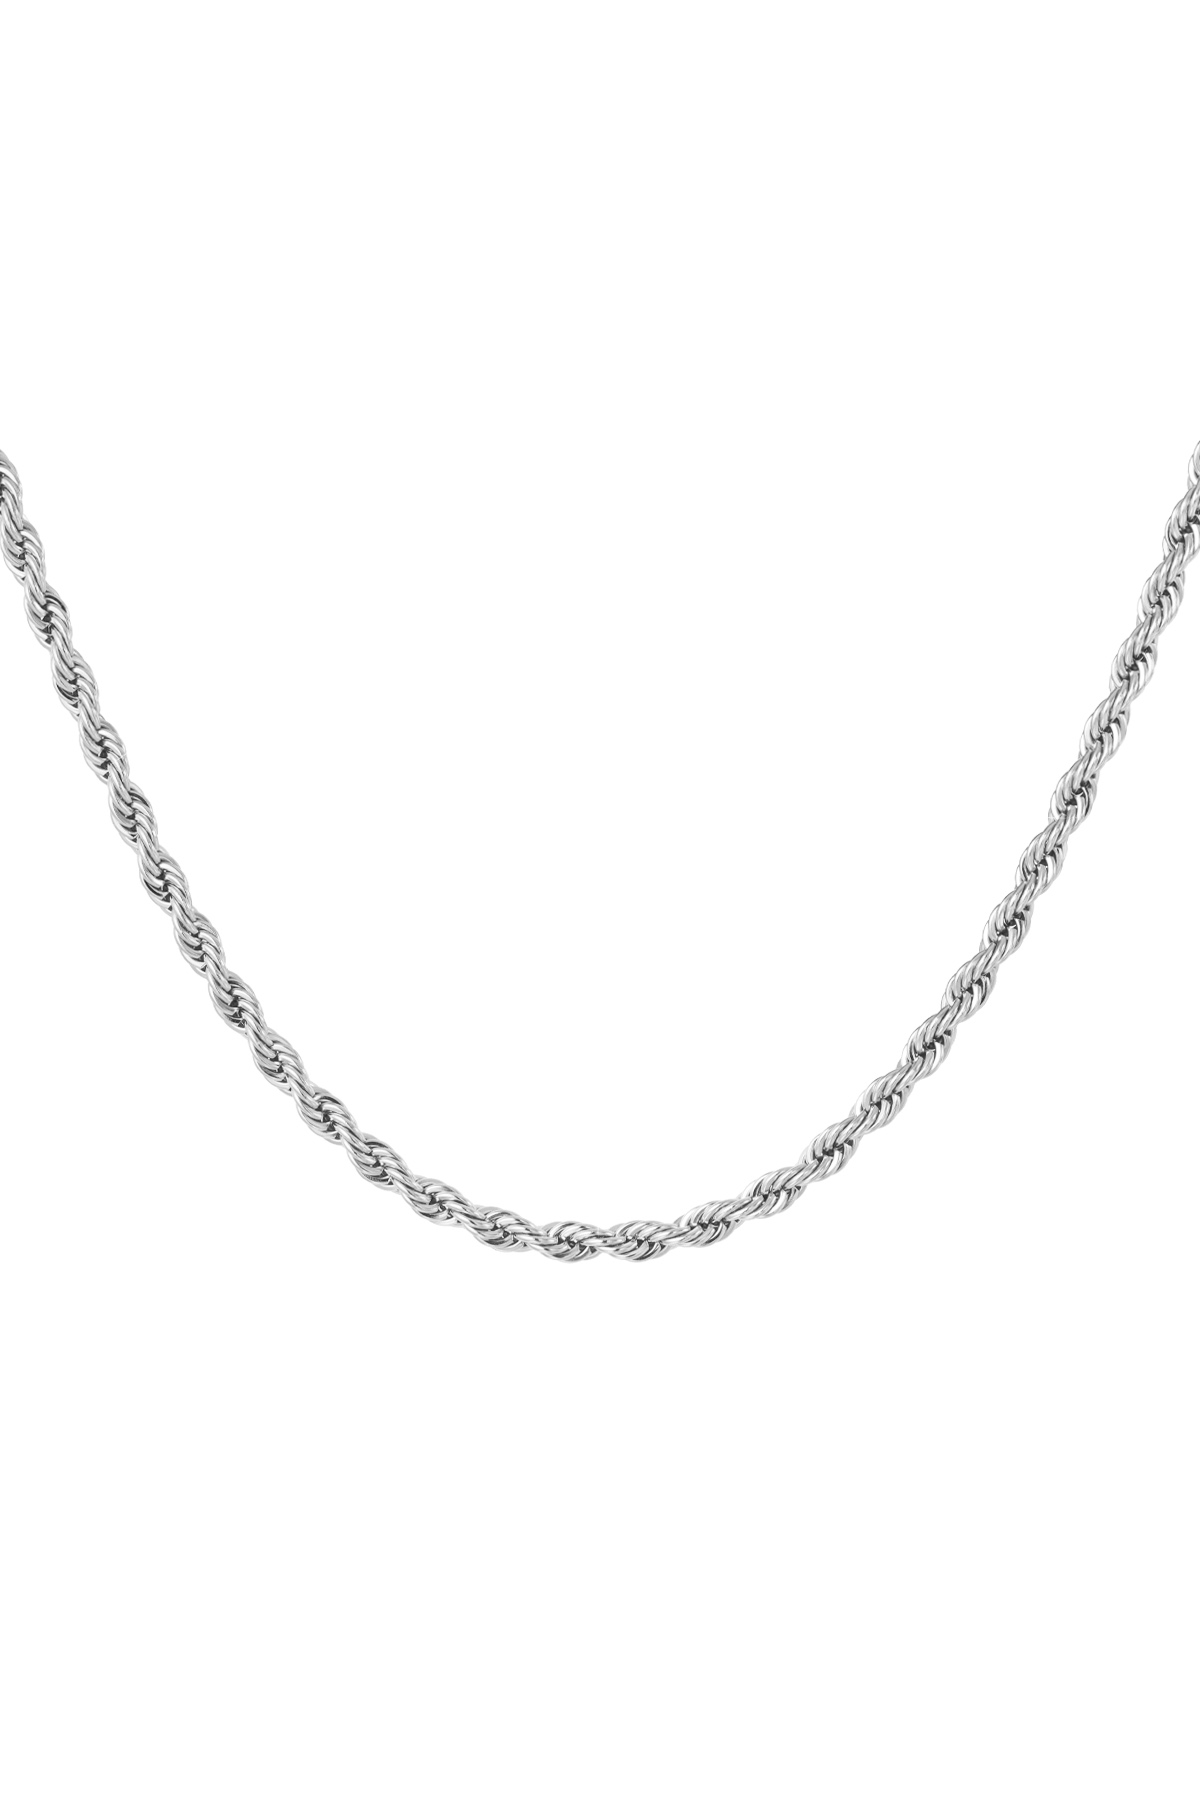 Collana unisex intrecciata 50 cm - argento-4.0MM h5 